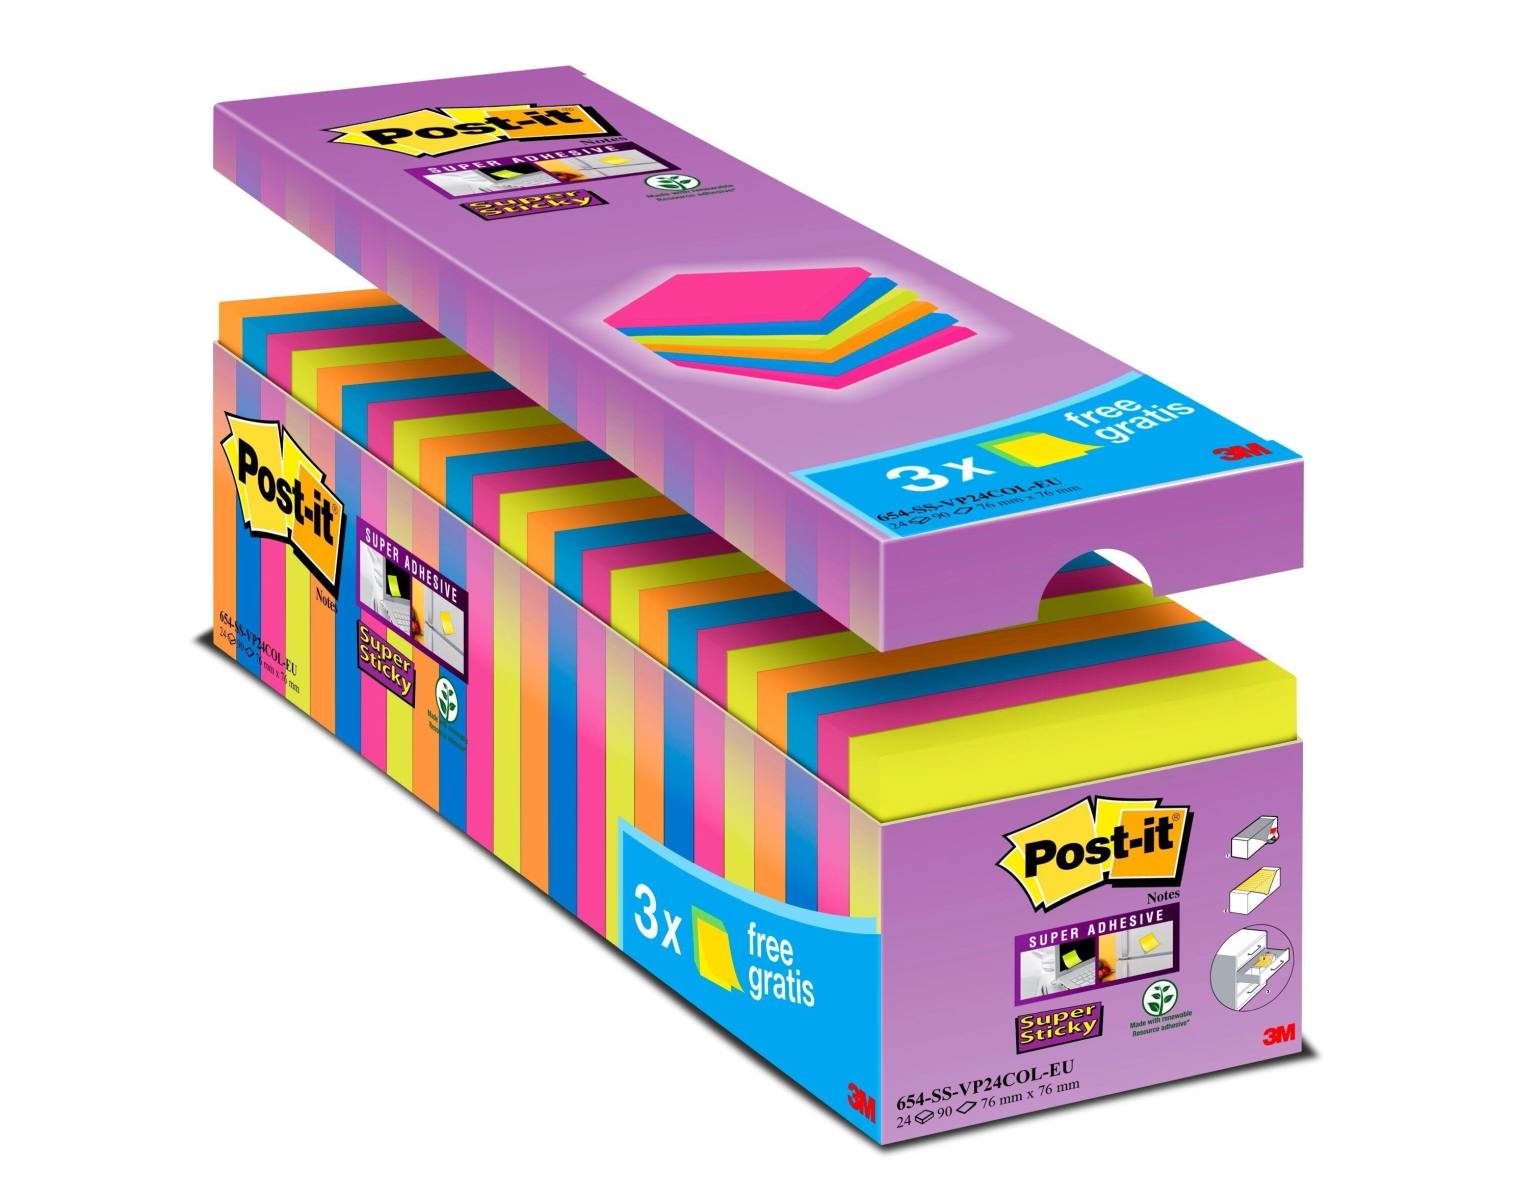 3M Post-it Super Sticky Notes Promotion 654SE24P, 24 pads van 90 vellen voor een speciale prijs, geassorteerde kleuren, 76 mm x 76 mm